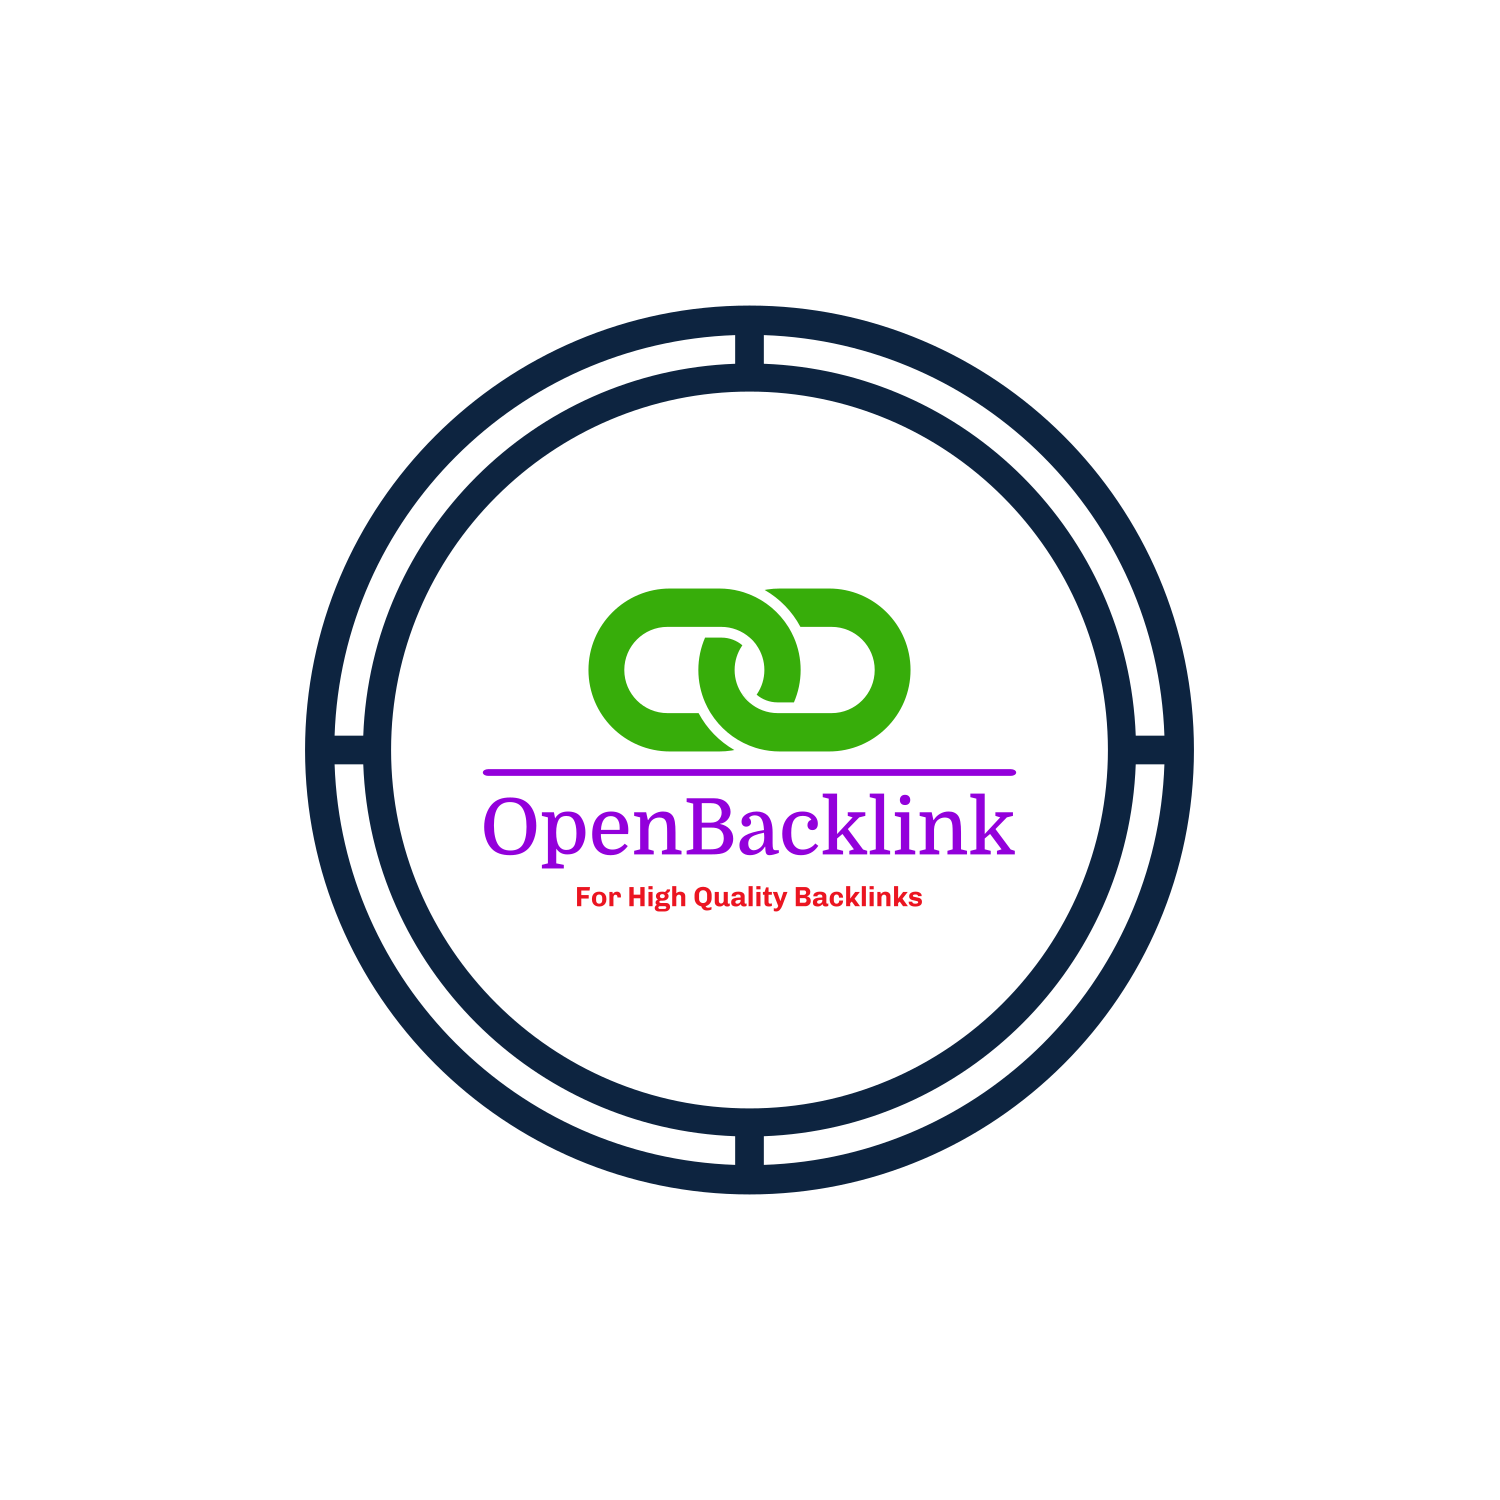 (c) Openbacklink.com